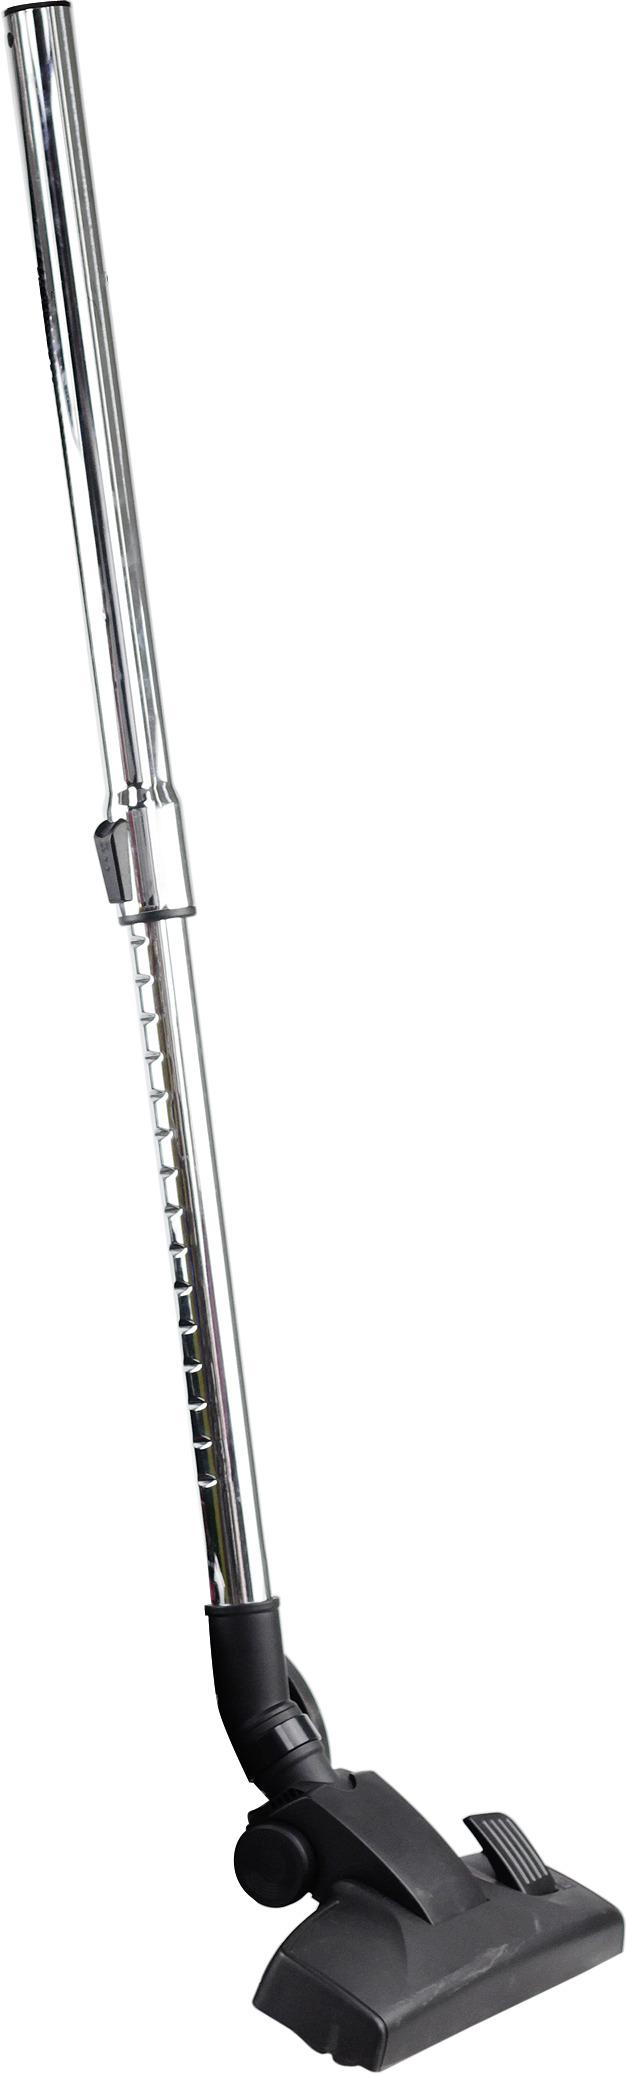 Staubsauger ohne Beutel mit Teleskoprohr 700 W - Anthrazit/Schwarz, KONVENTIONELL, Kunststoff/Metall (43/27/33,3cm) - Bono